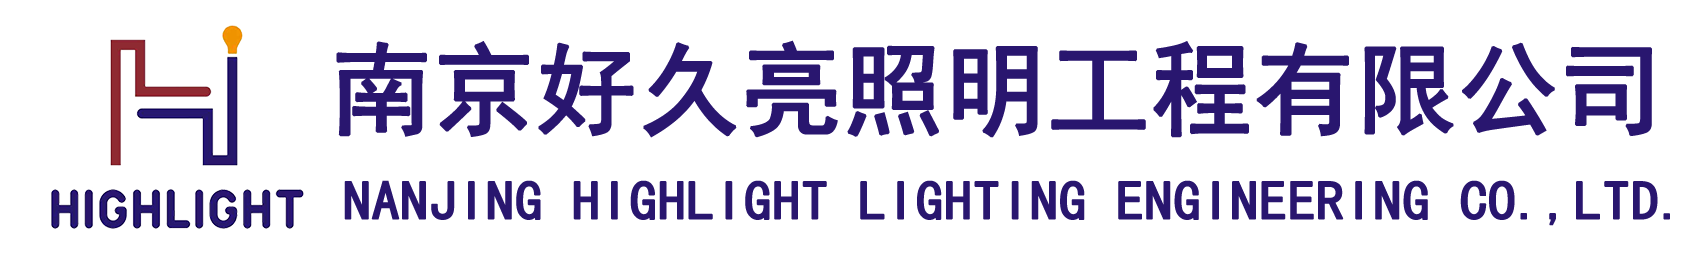 亮化工程-景观照明-投光灯-led路灯-led筒灯-led射灯-南京好久亮照明工程有限公司